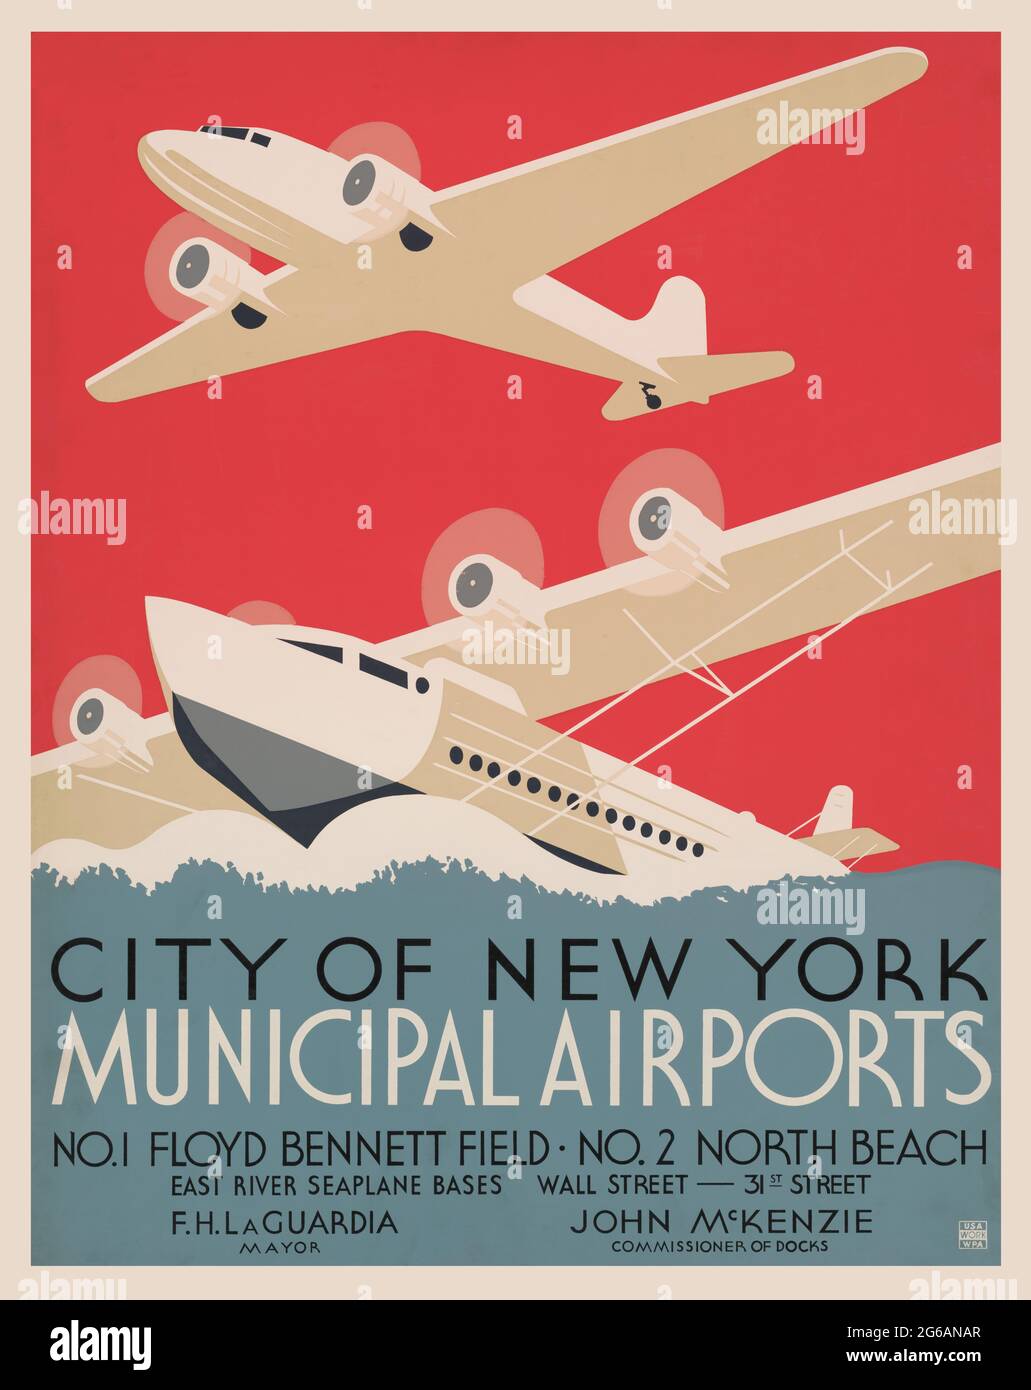 Aéroports municipaux de la ville de New York – affiche – 1937 – Floyd Bennett Field, North Beach. Affiche aviation. Banque D'Images